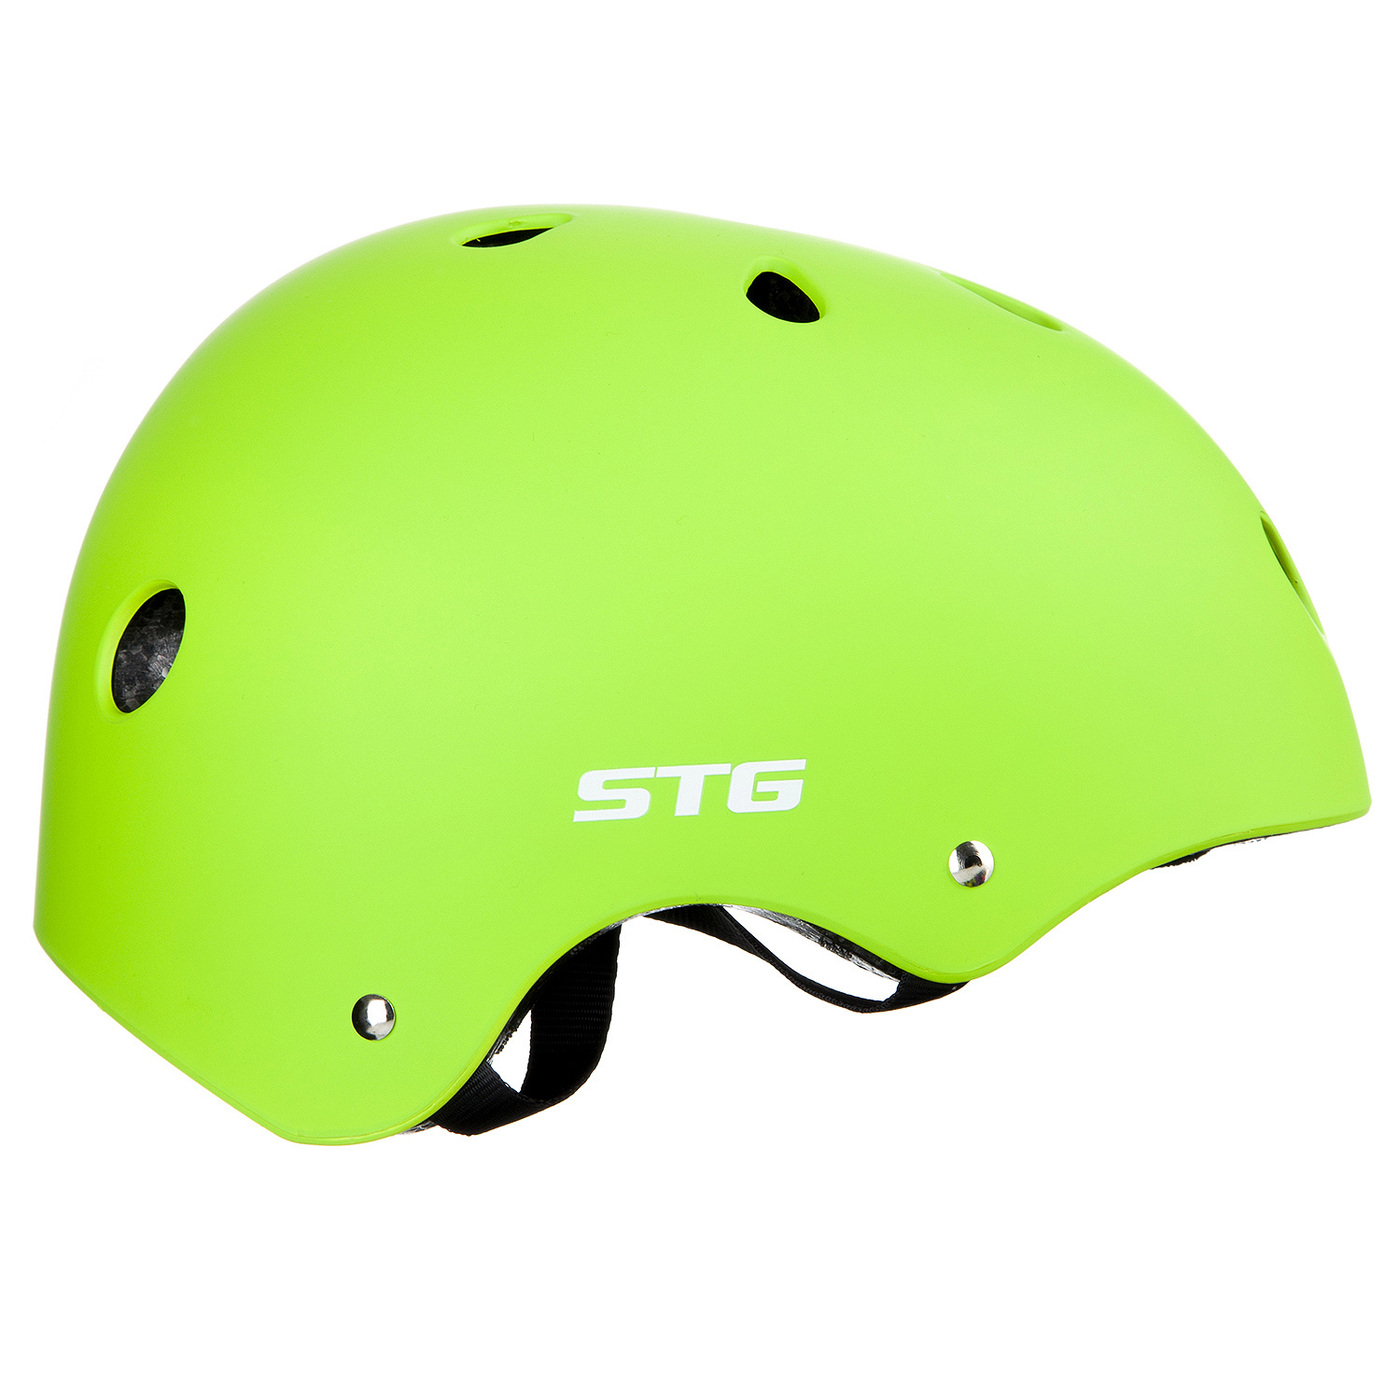 Велосипедный шлем STG MTV12, салатовый, M